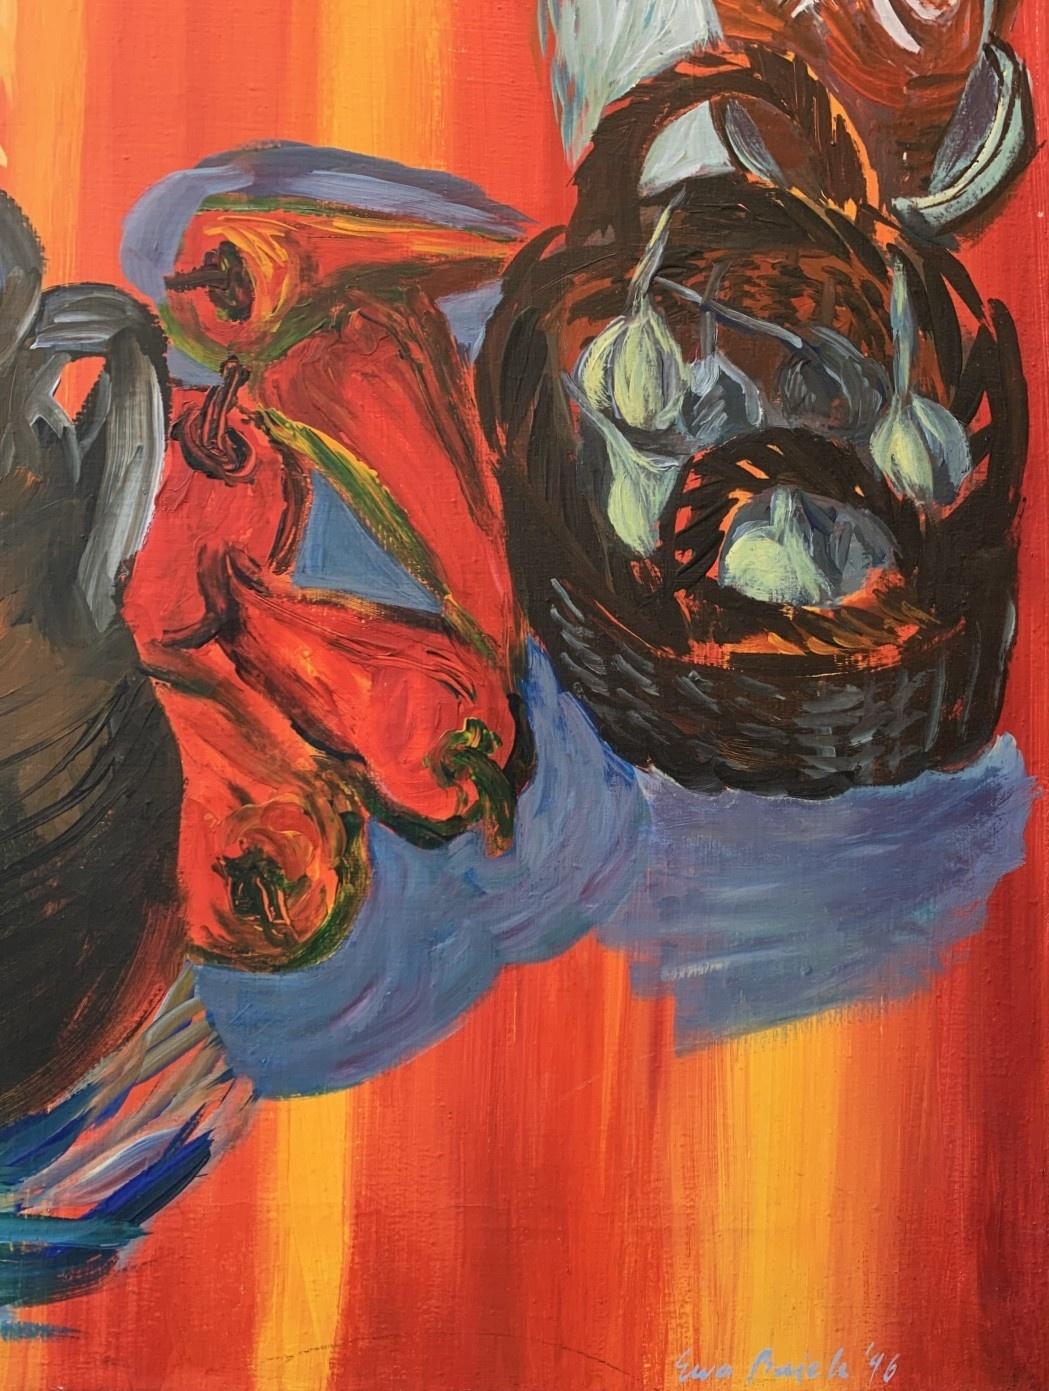 Farbenfrohes Ölgemälde auf Leinwand aus dem 20. Jahrhundert von der polnischen Künstlerin Ewa Bajek. Das Gemälde zeigt ein Stillleben mit Gemüse, Tierschädeln, Glas und Pflanzen in Töpfen. Die Farben sind leuchtend und Orange dominiert die gesamte